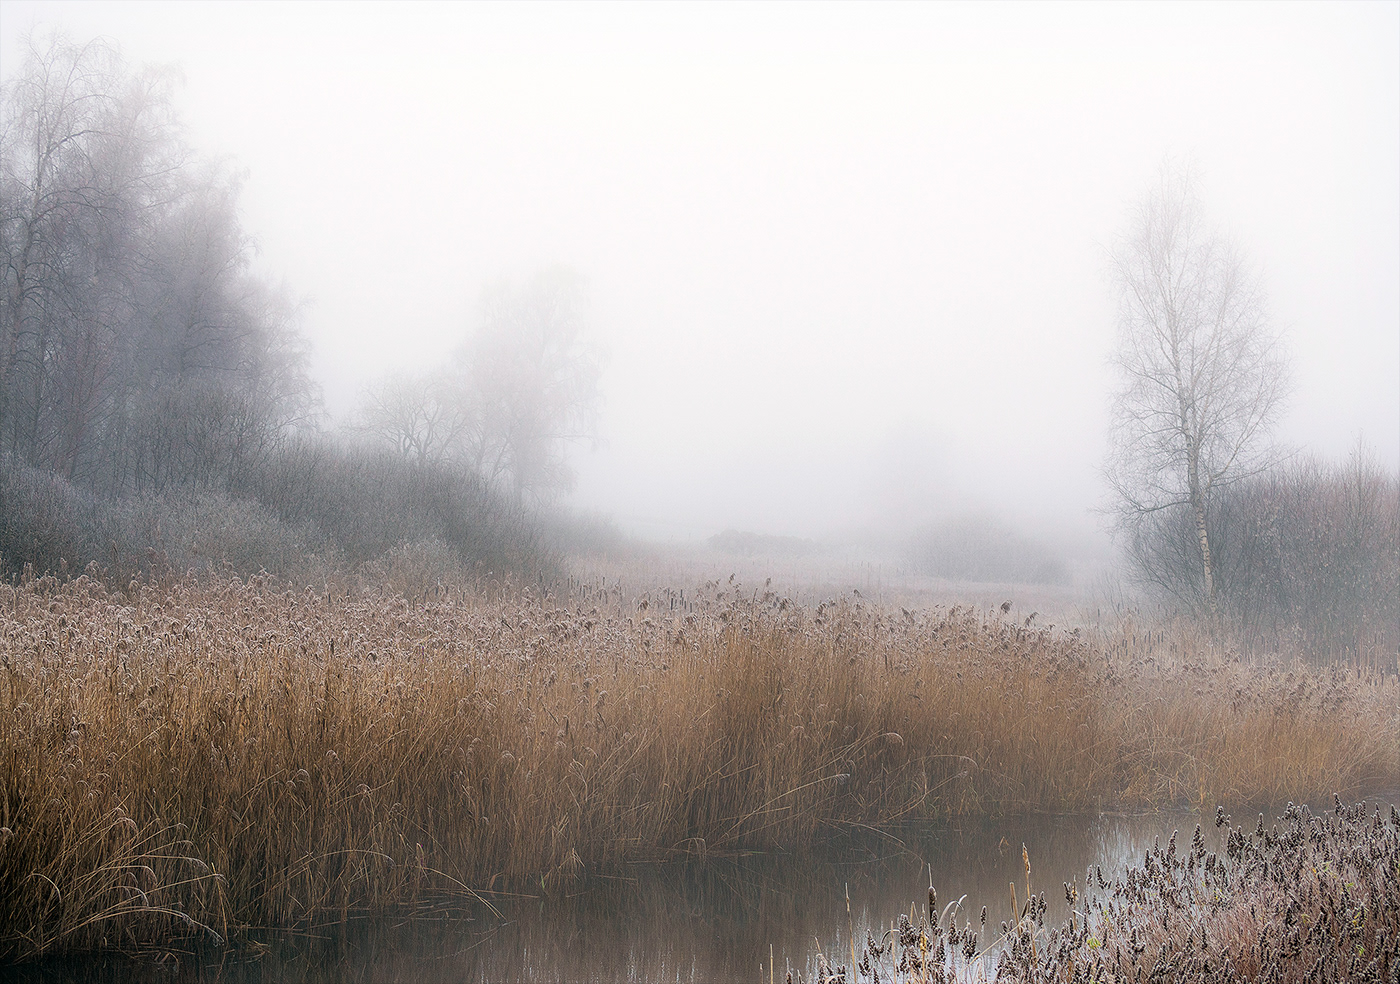 December Europe fog Landscape Nature river rural season Sweden water